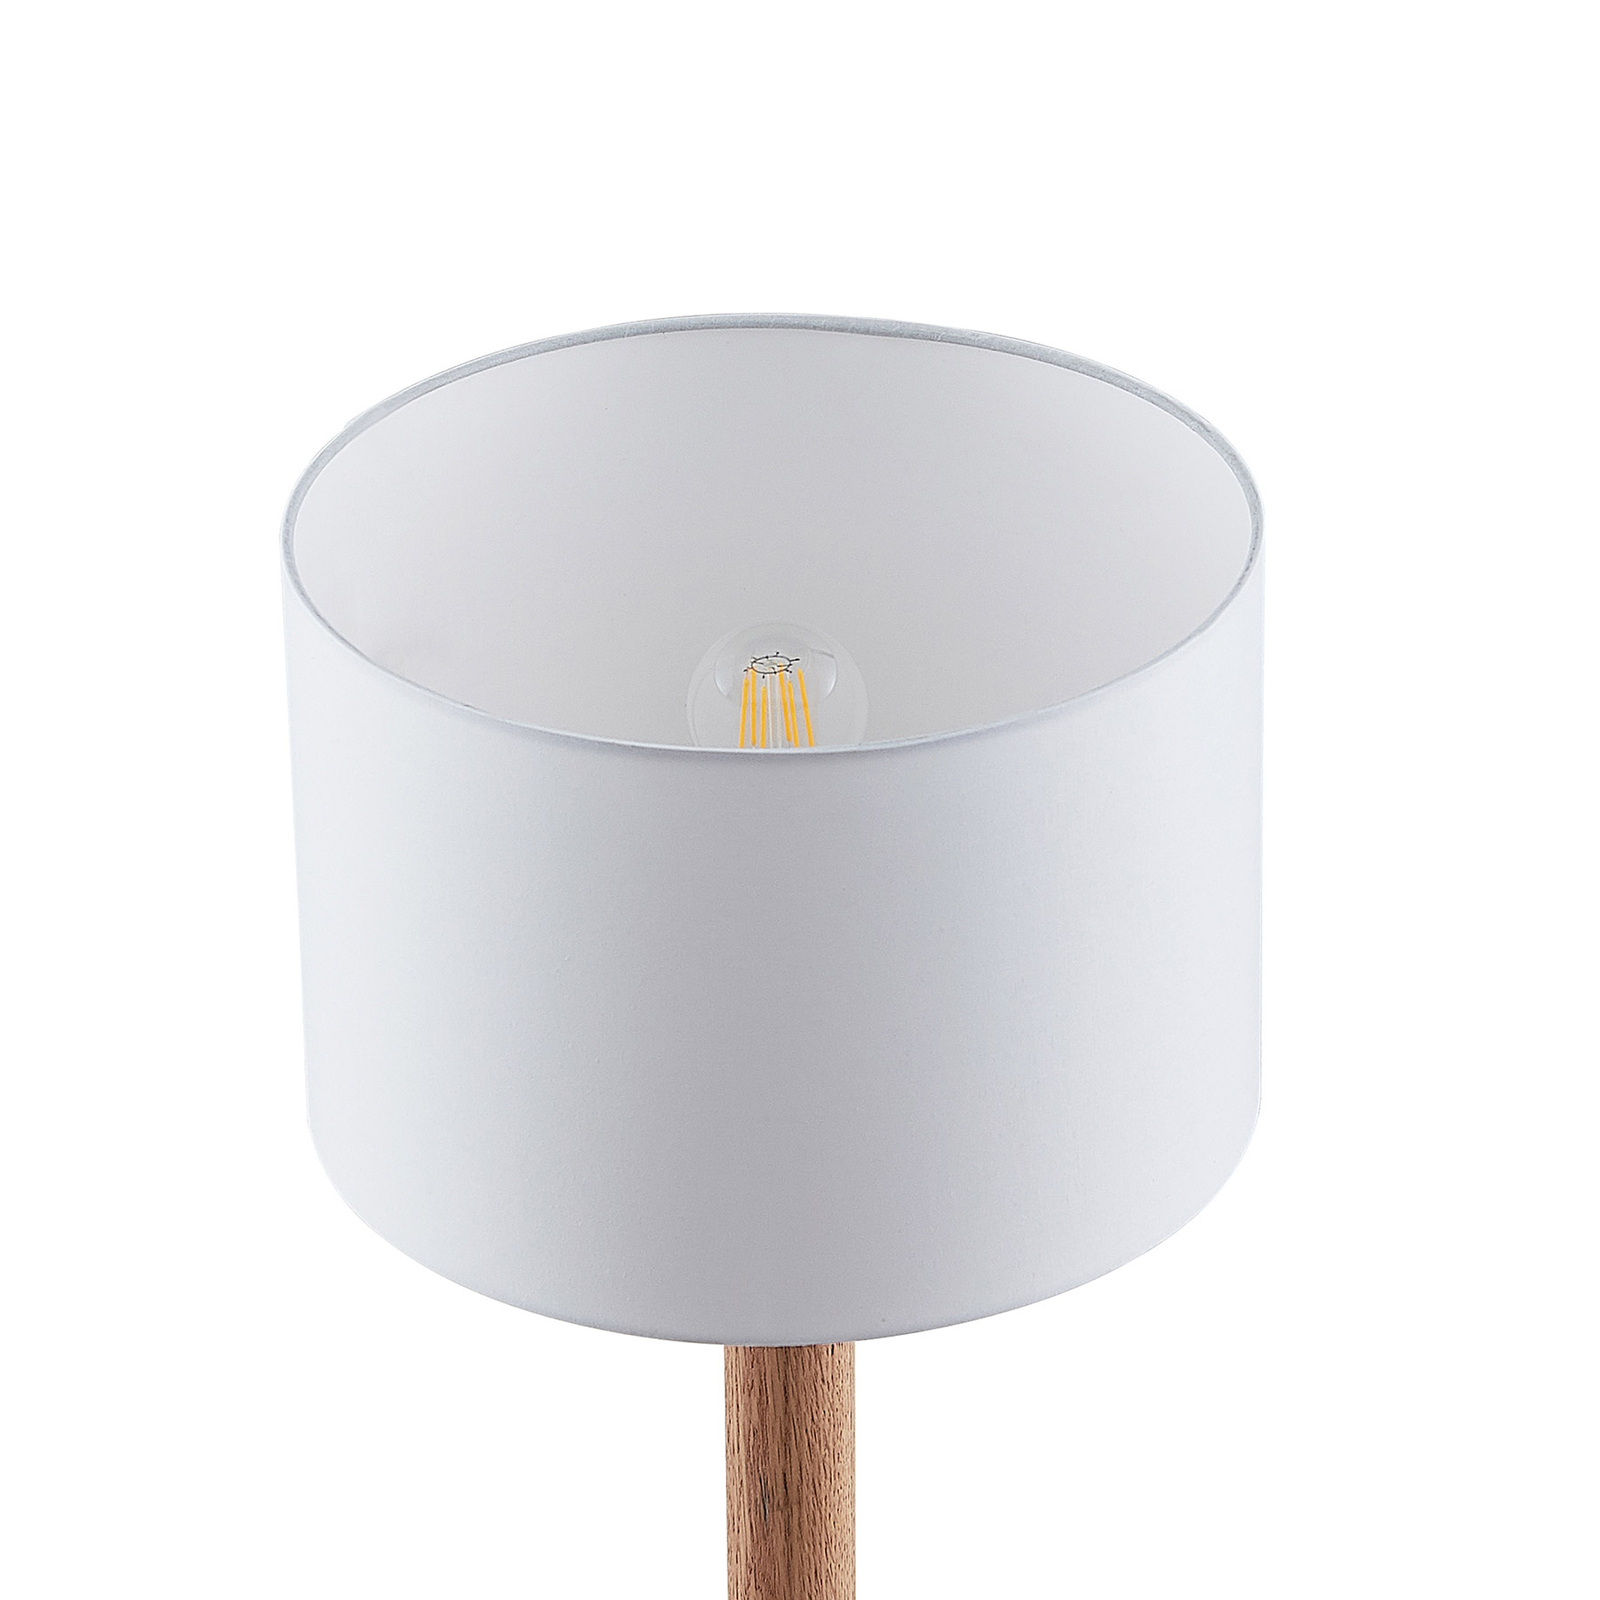 Lucande Heily lampa stołowa, cylinder, 21cm, biała